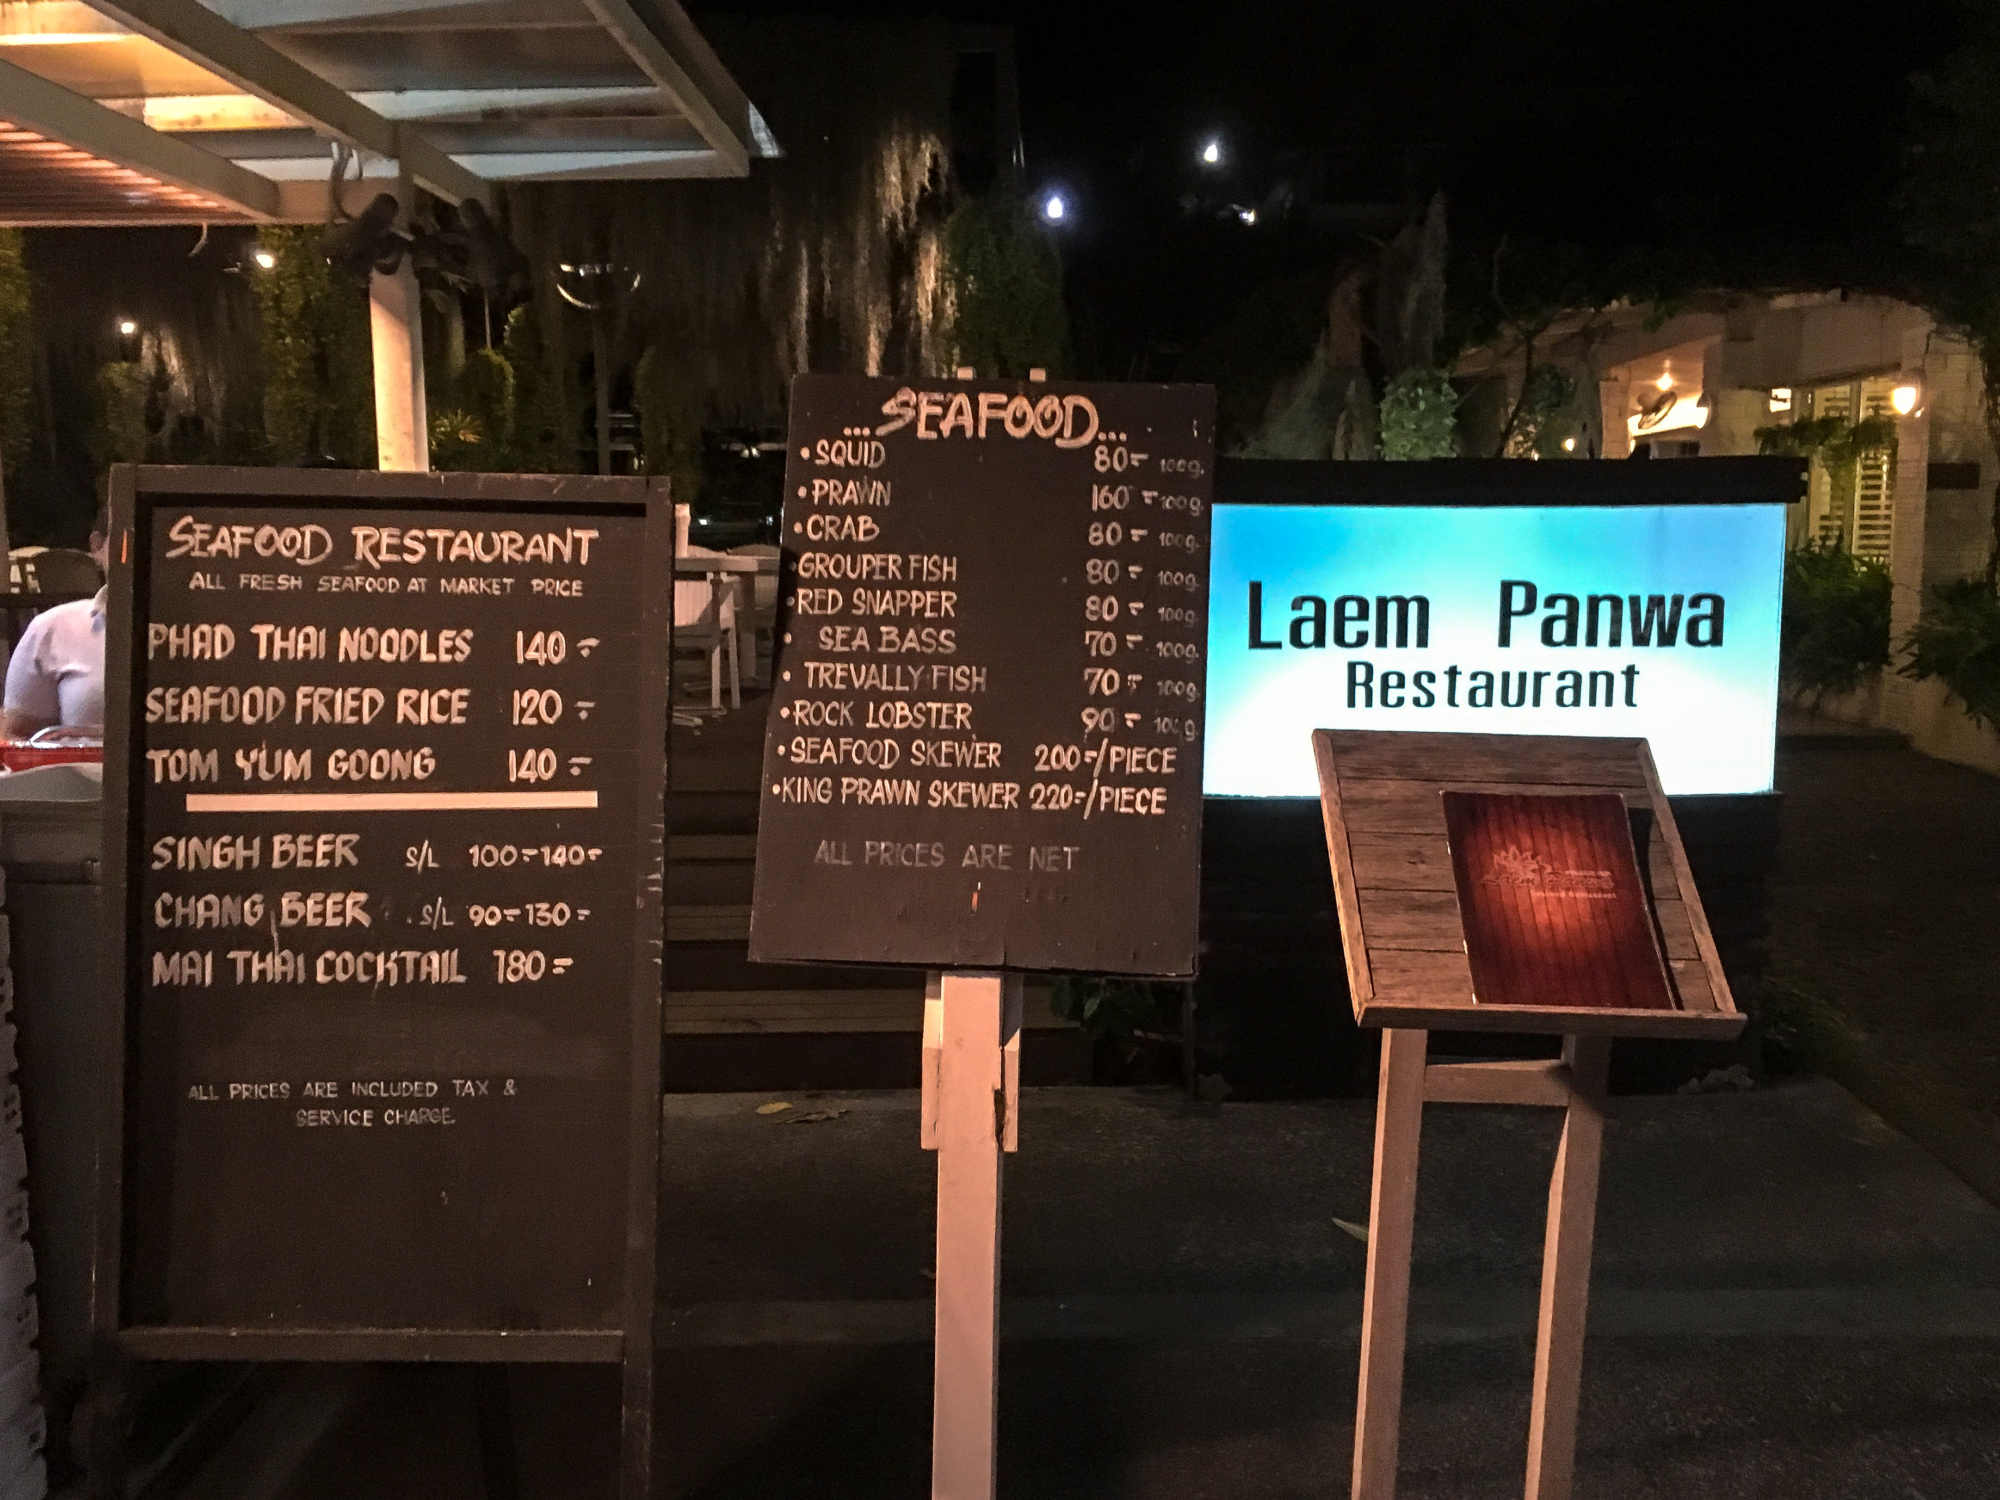 Laem Panwa at Cape Panwa Hotel, Phuket Thailand